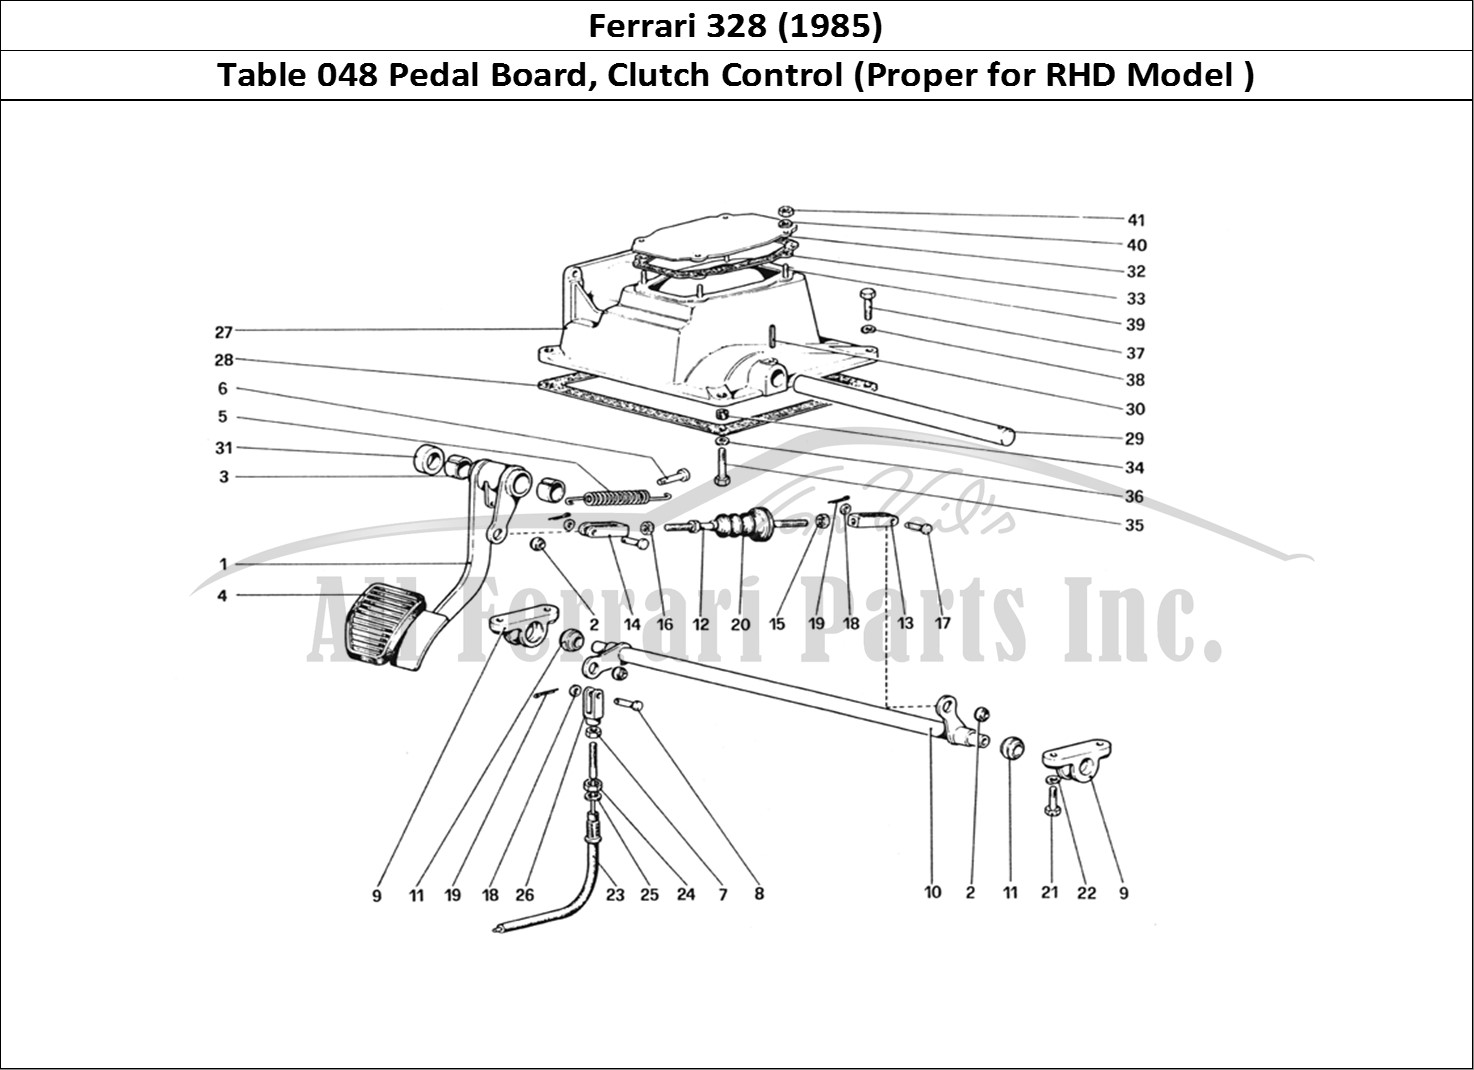 Ferrari Parts Ferrari 328 (1985) Page 048 Pedal Board Clutch Contro